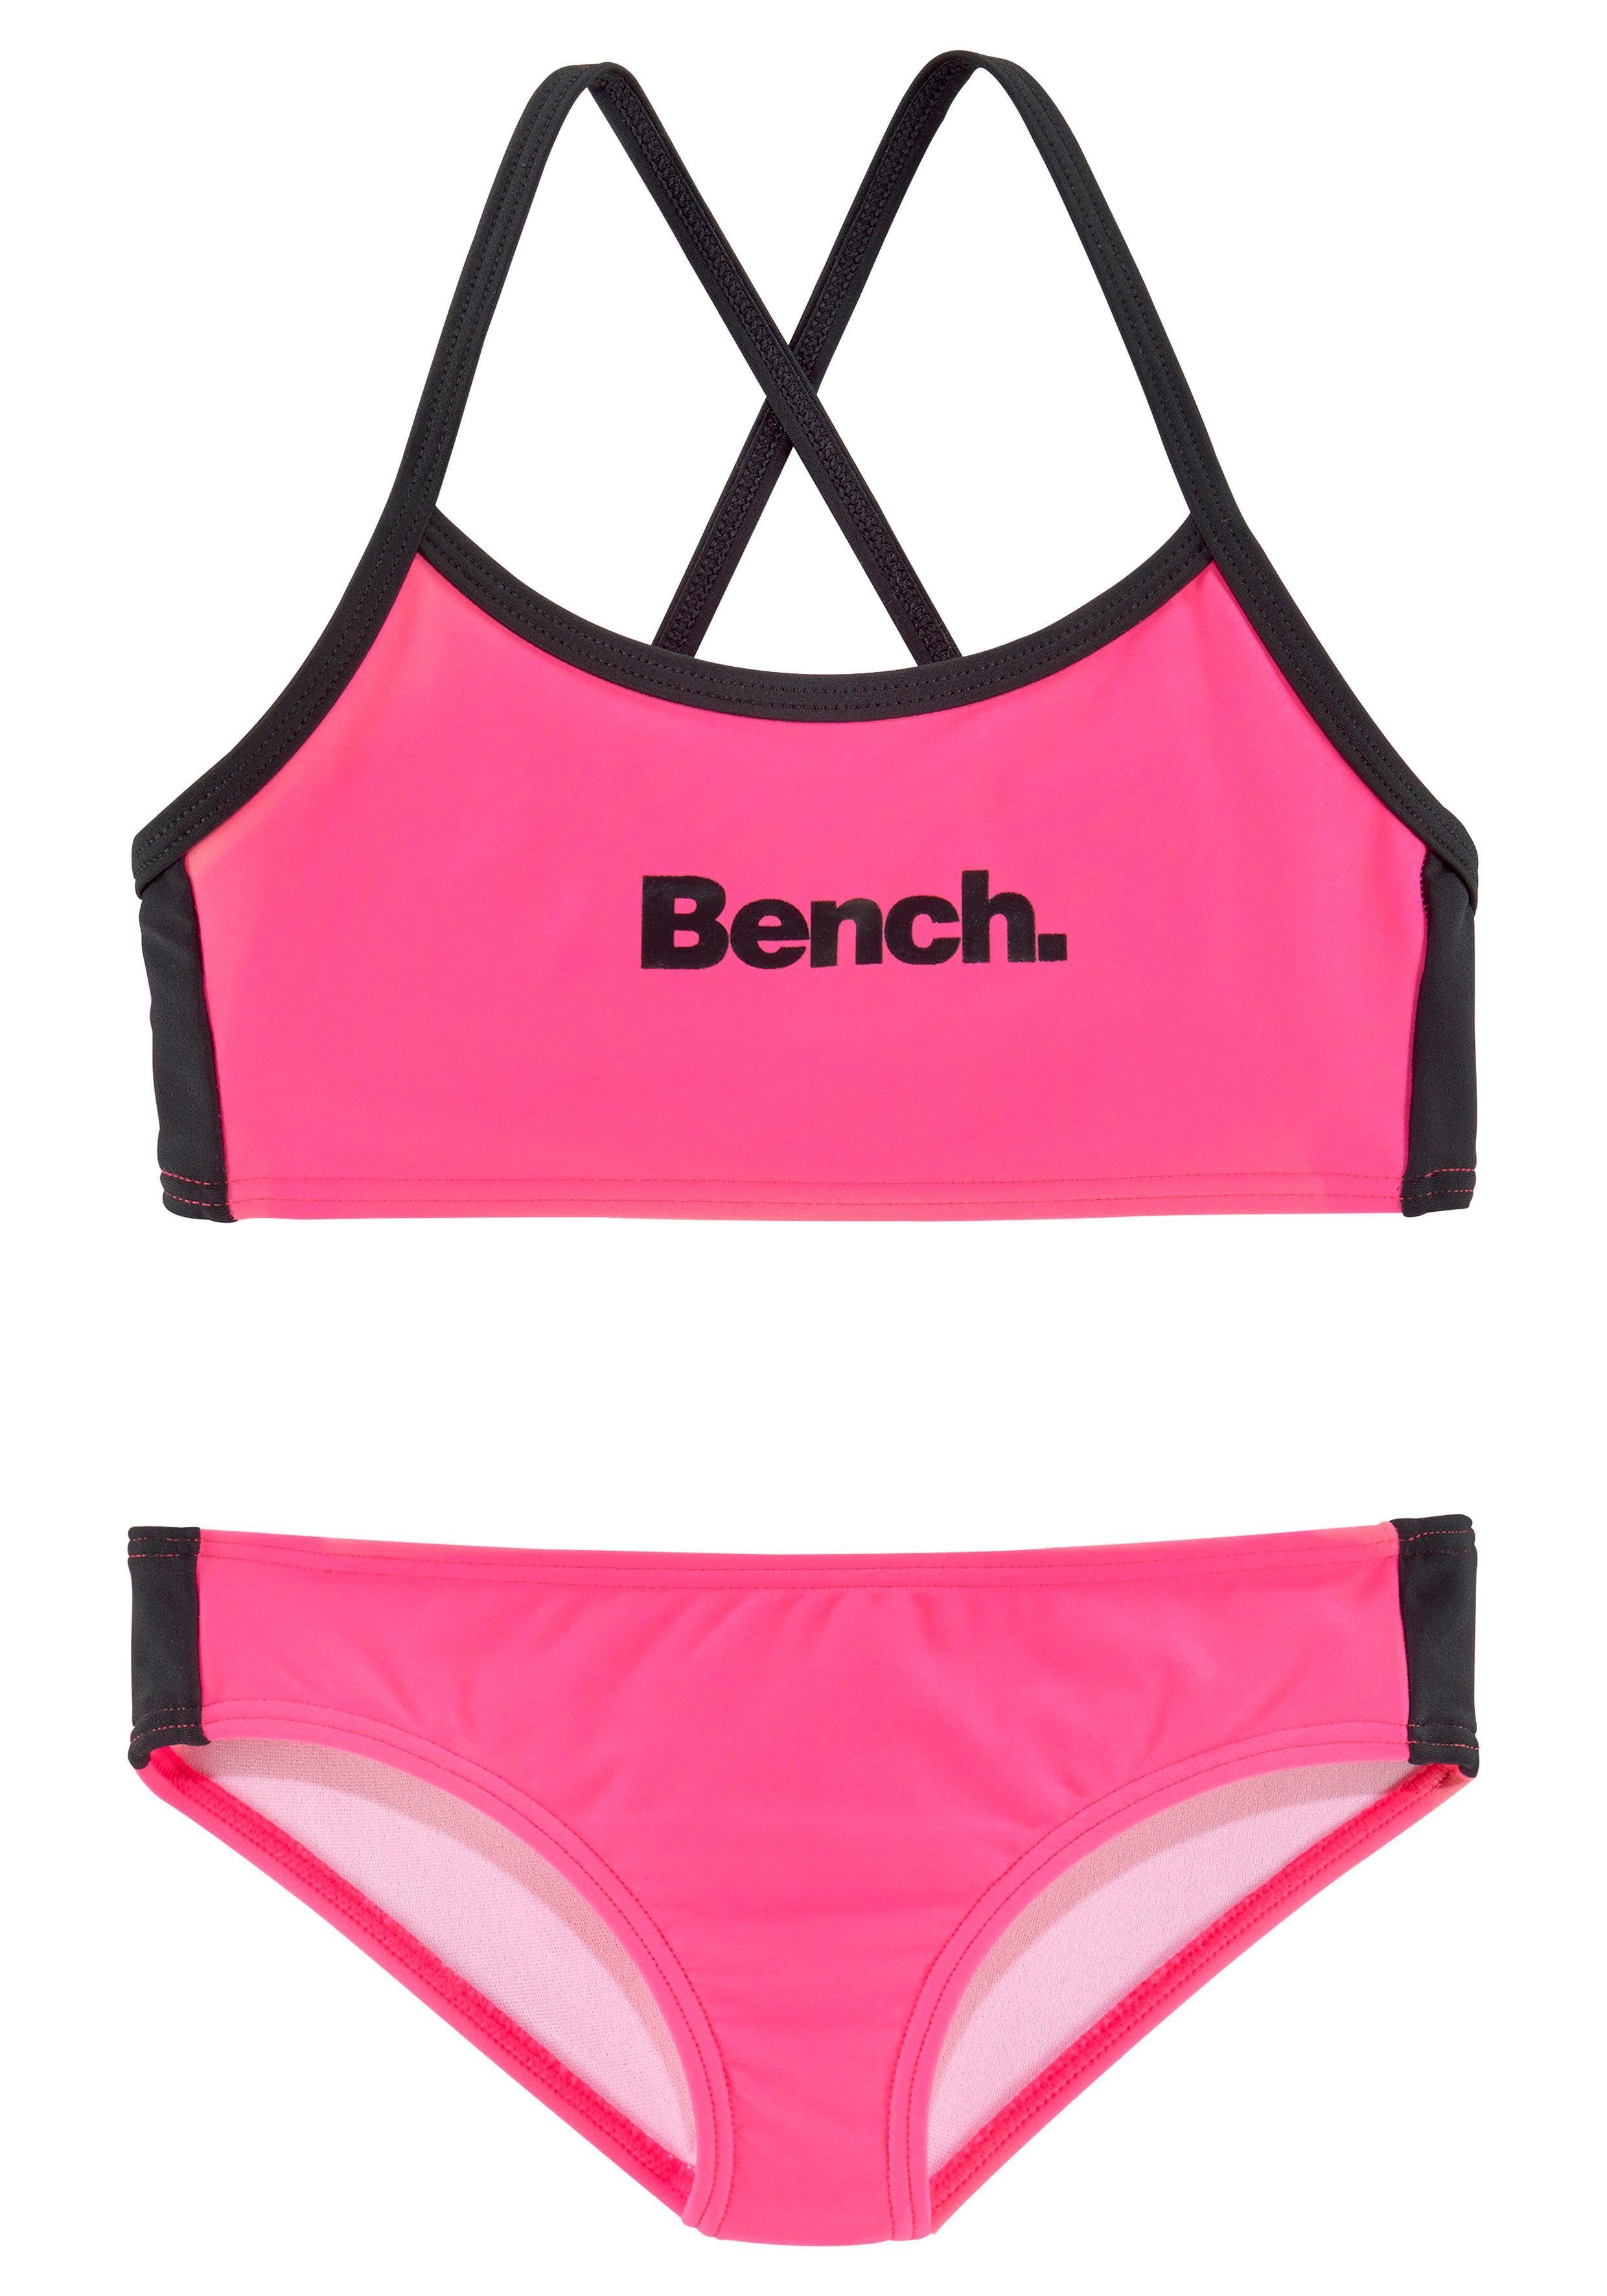 mit Trägern Bench. pink-schwarz Bustier-Bikini gekreuzten